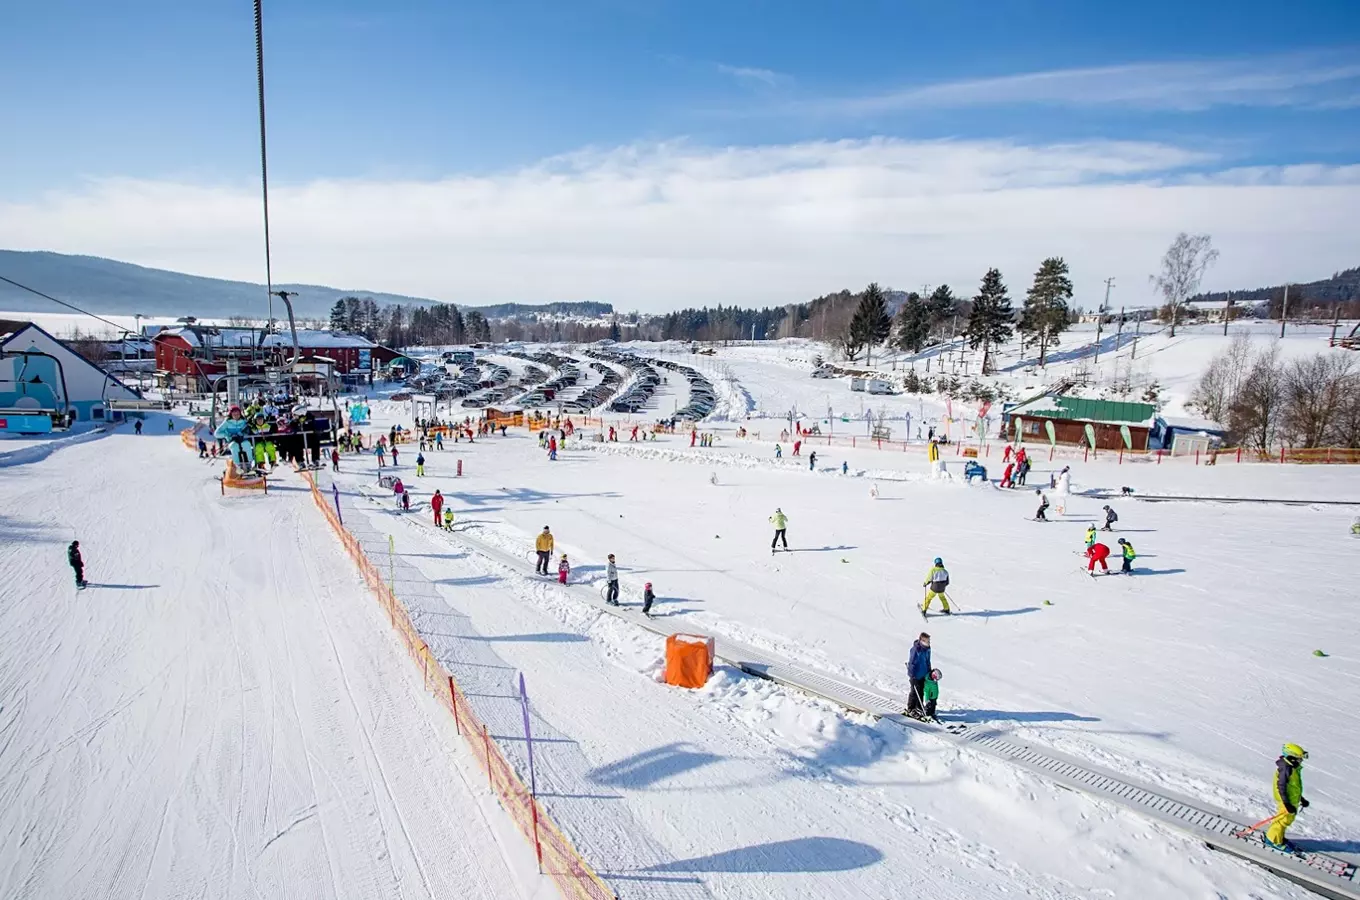 Užijte si pohodové lyžování ve Skiareálu Lipno - rodiny se letos zalyžují o víkendu levněji